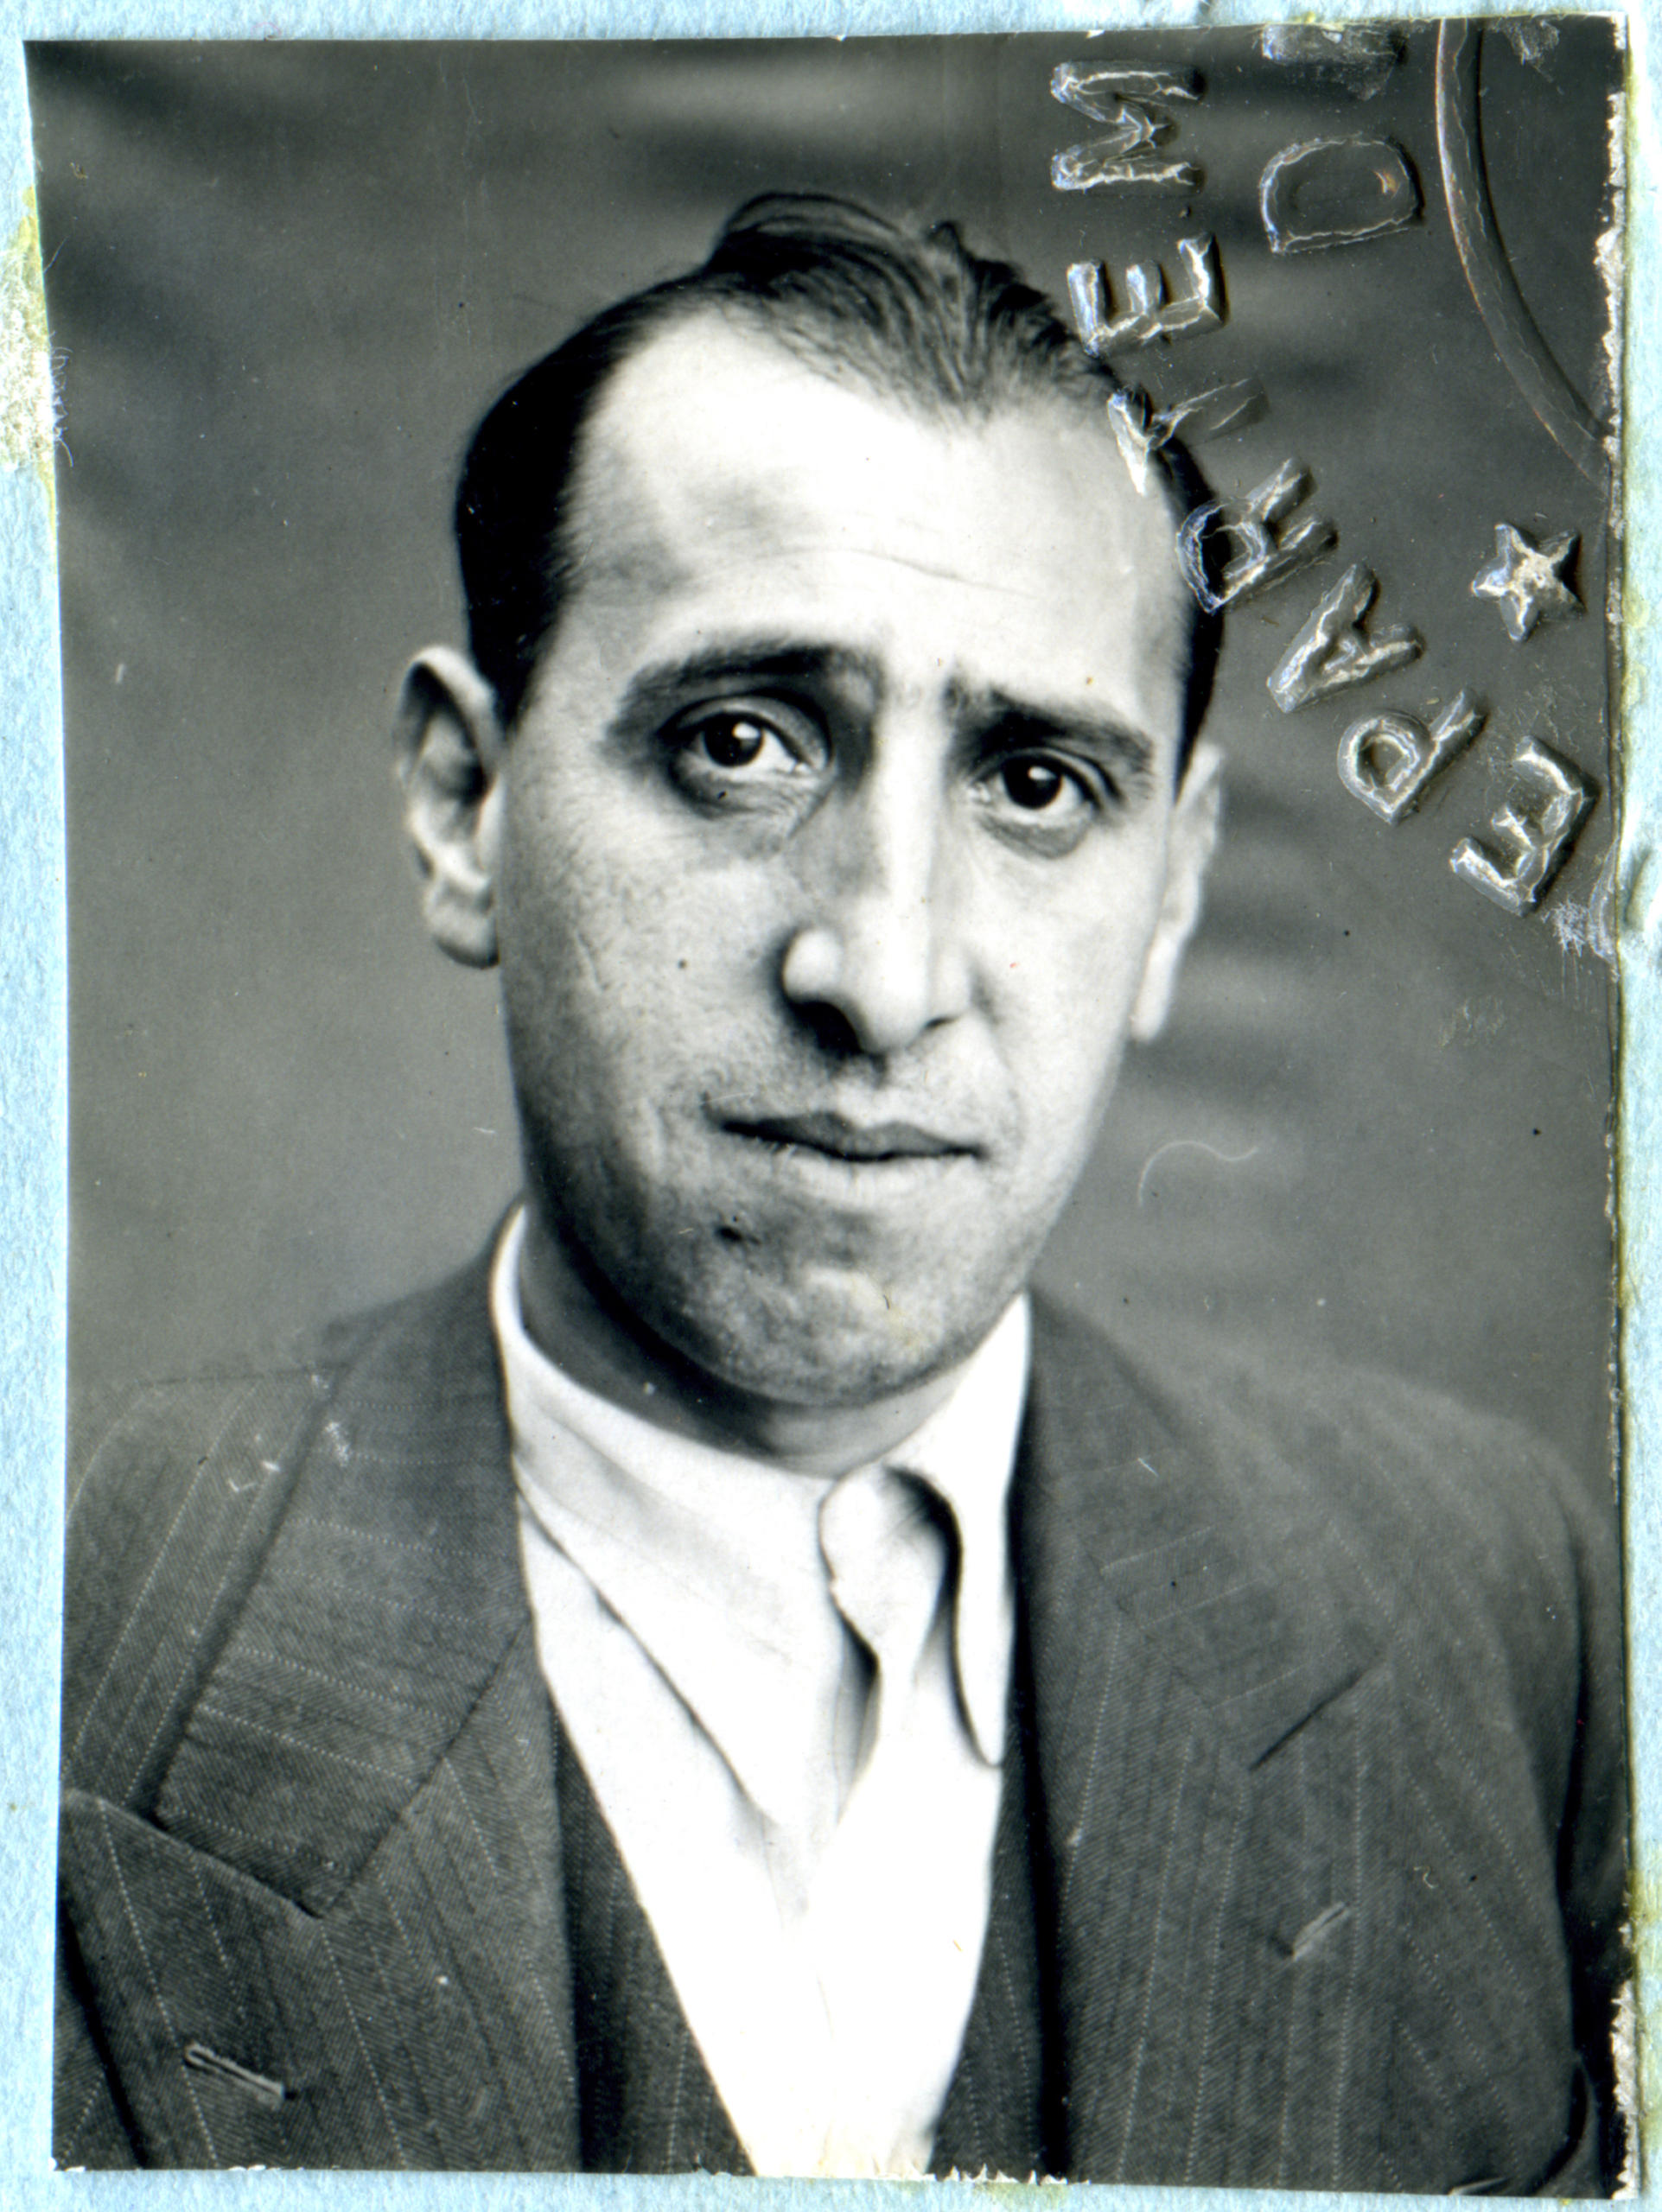 foto storica formato passaporto di un uomo.